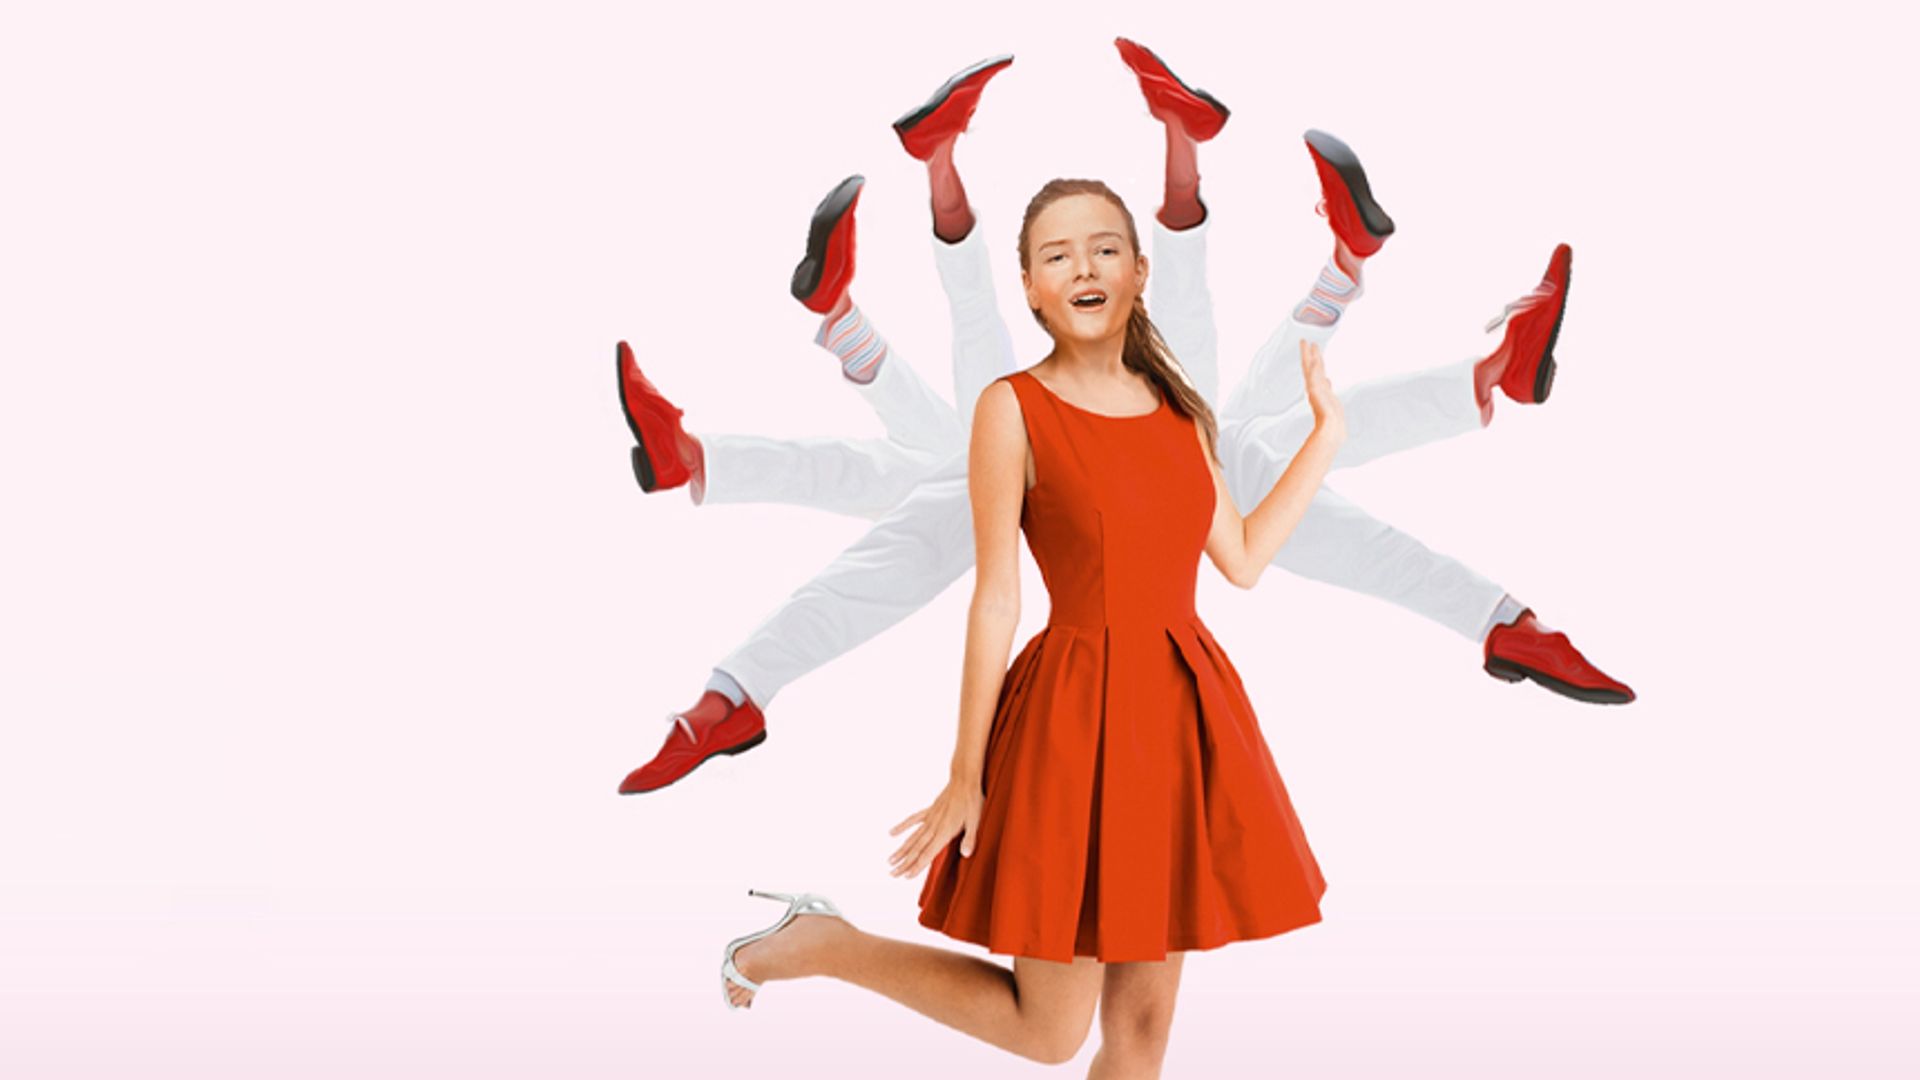 Julie und die roten Schuhe